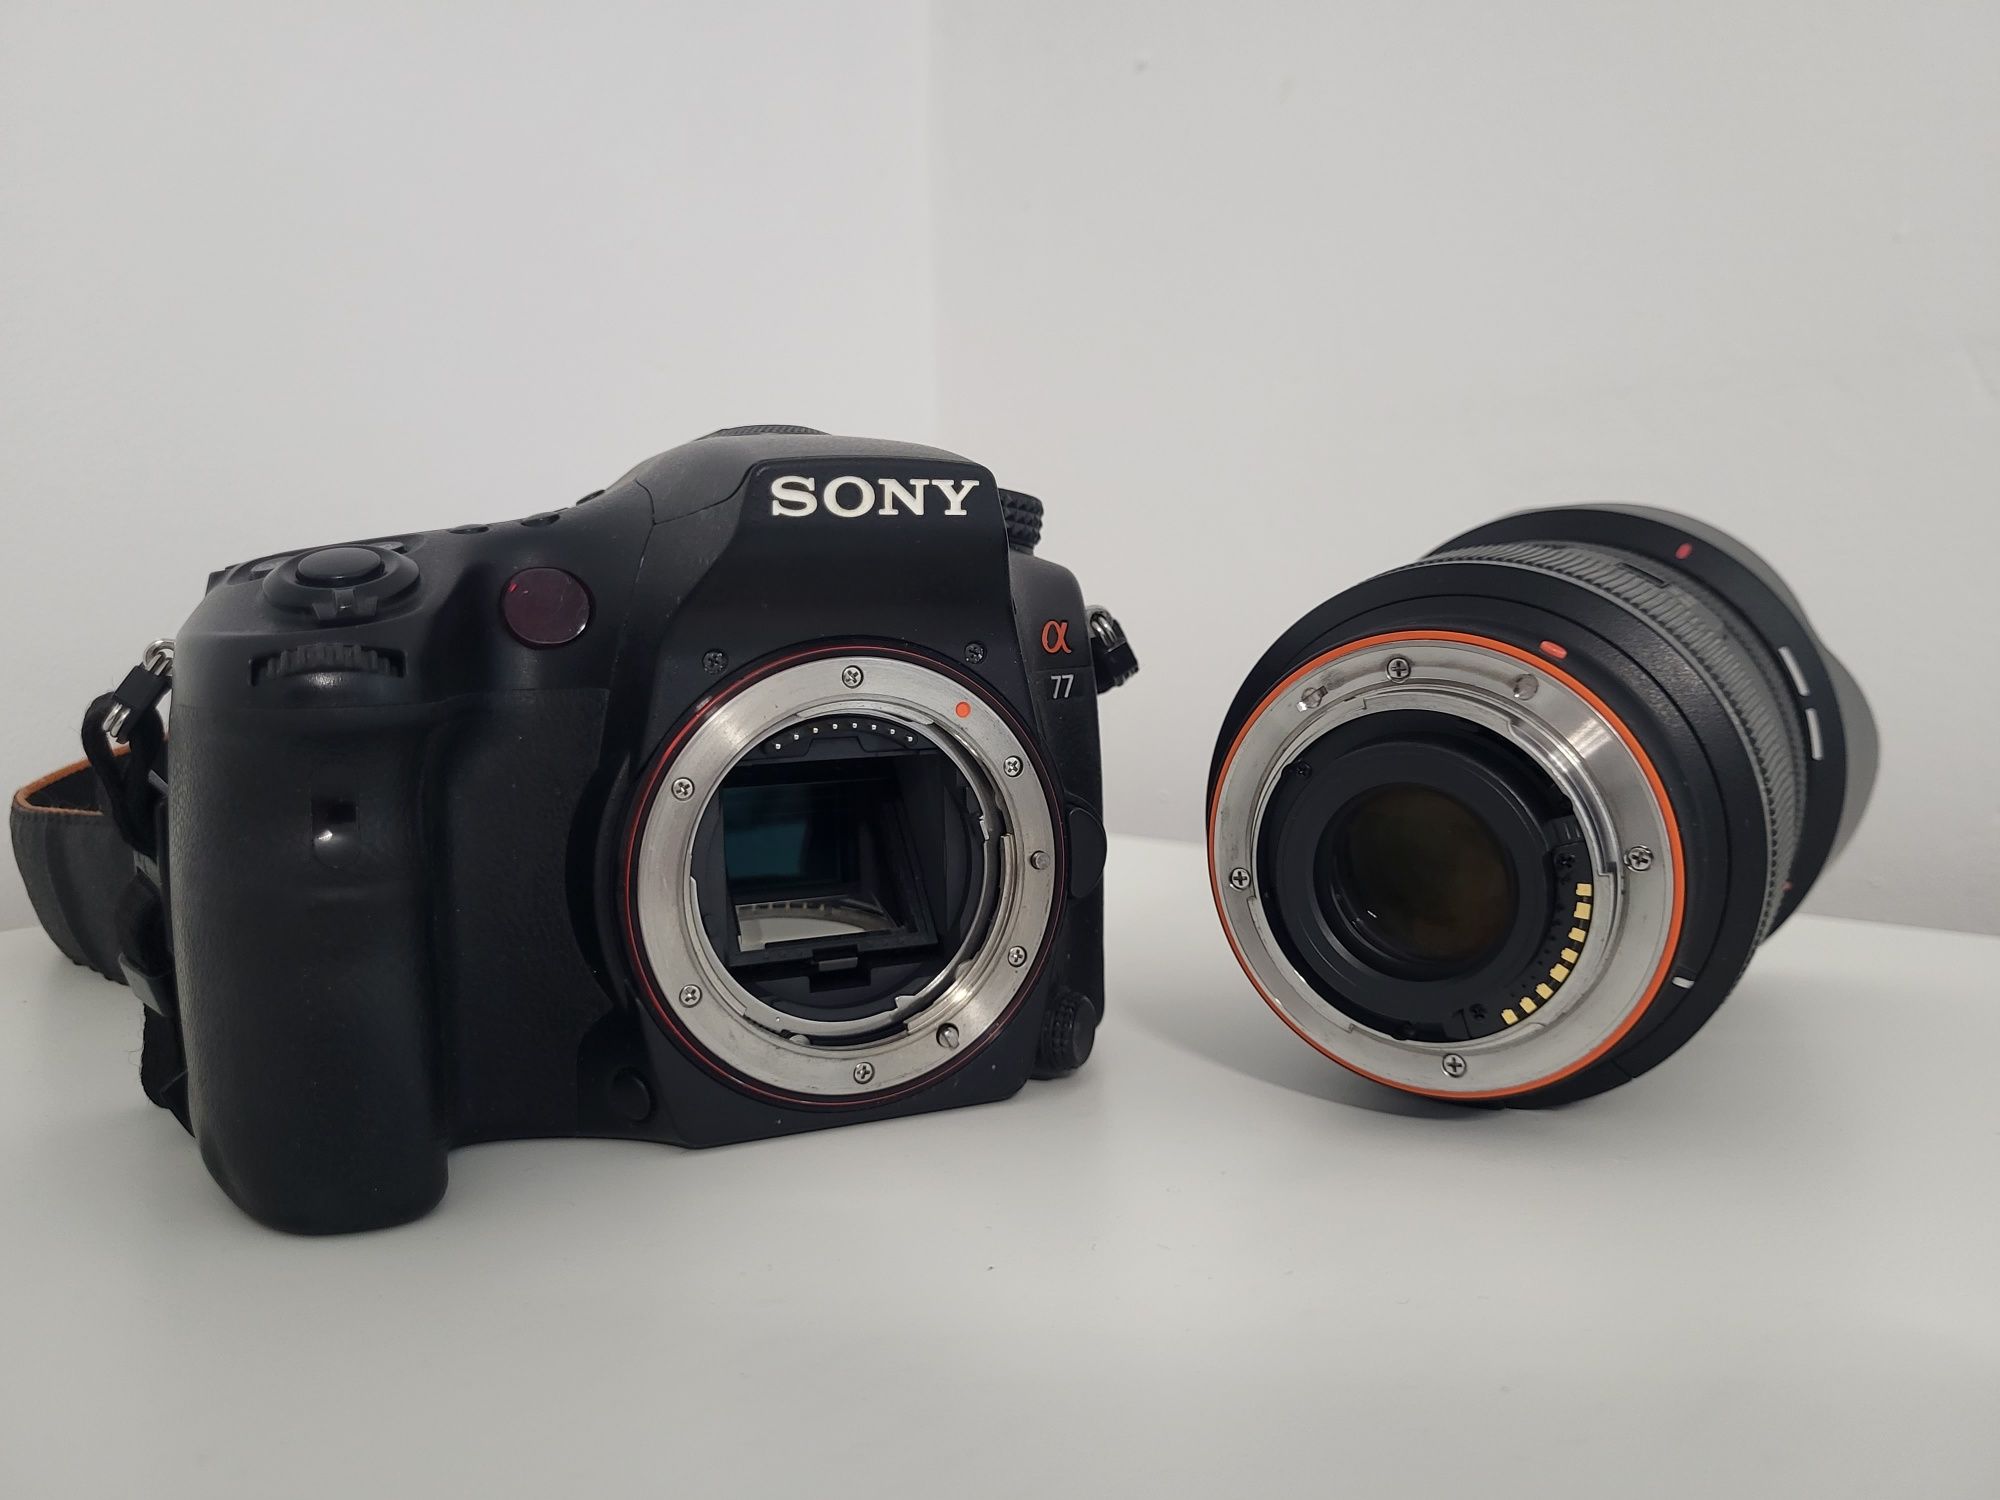 Kit foto: Sony A77 + 2 obiective + blit Sony